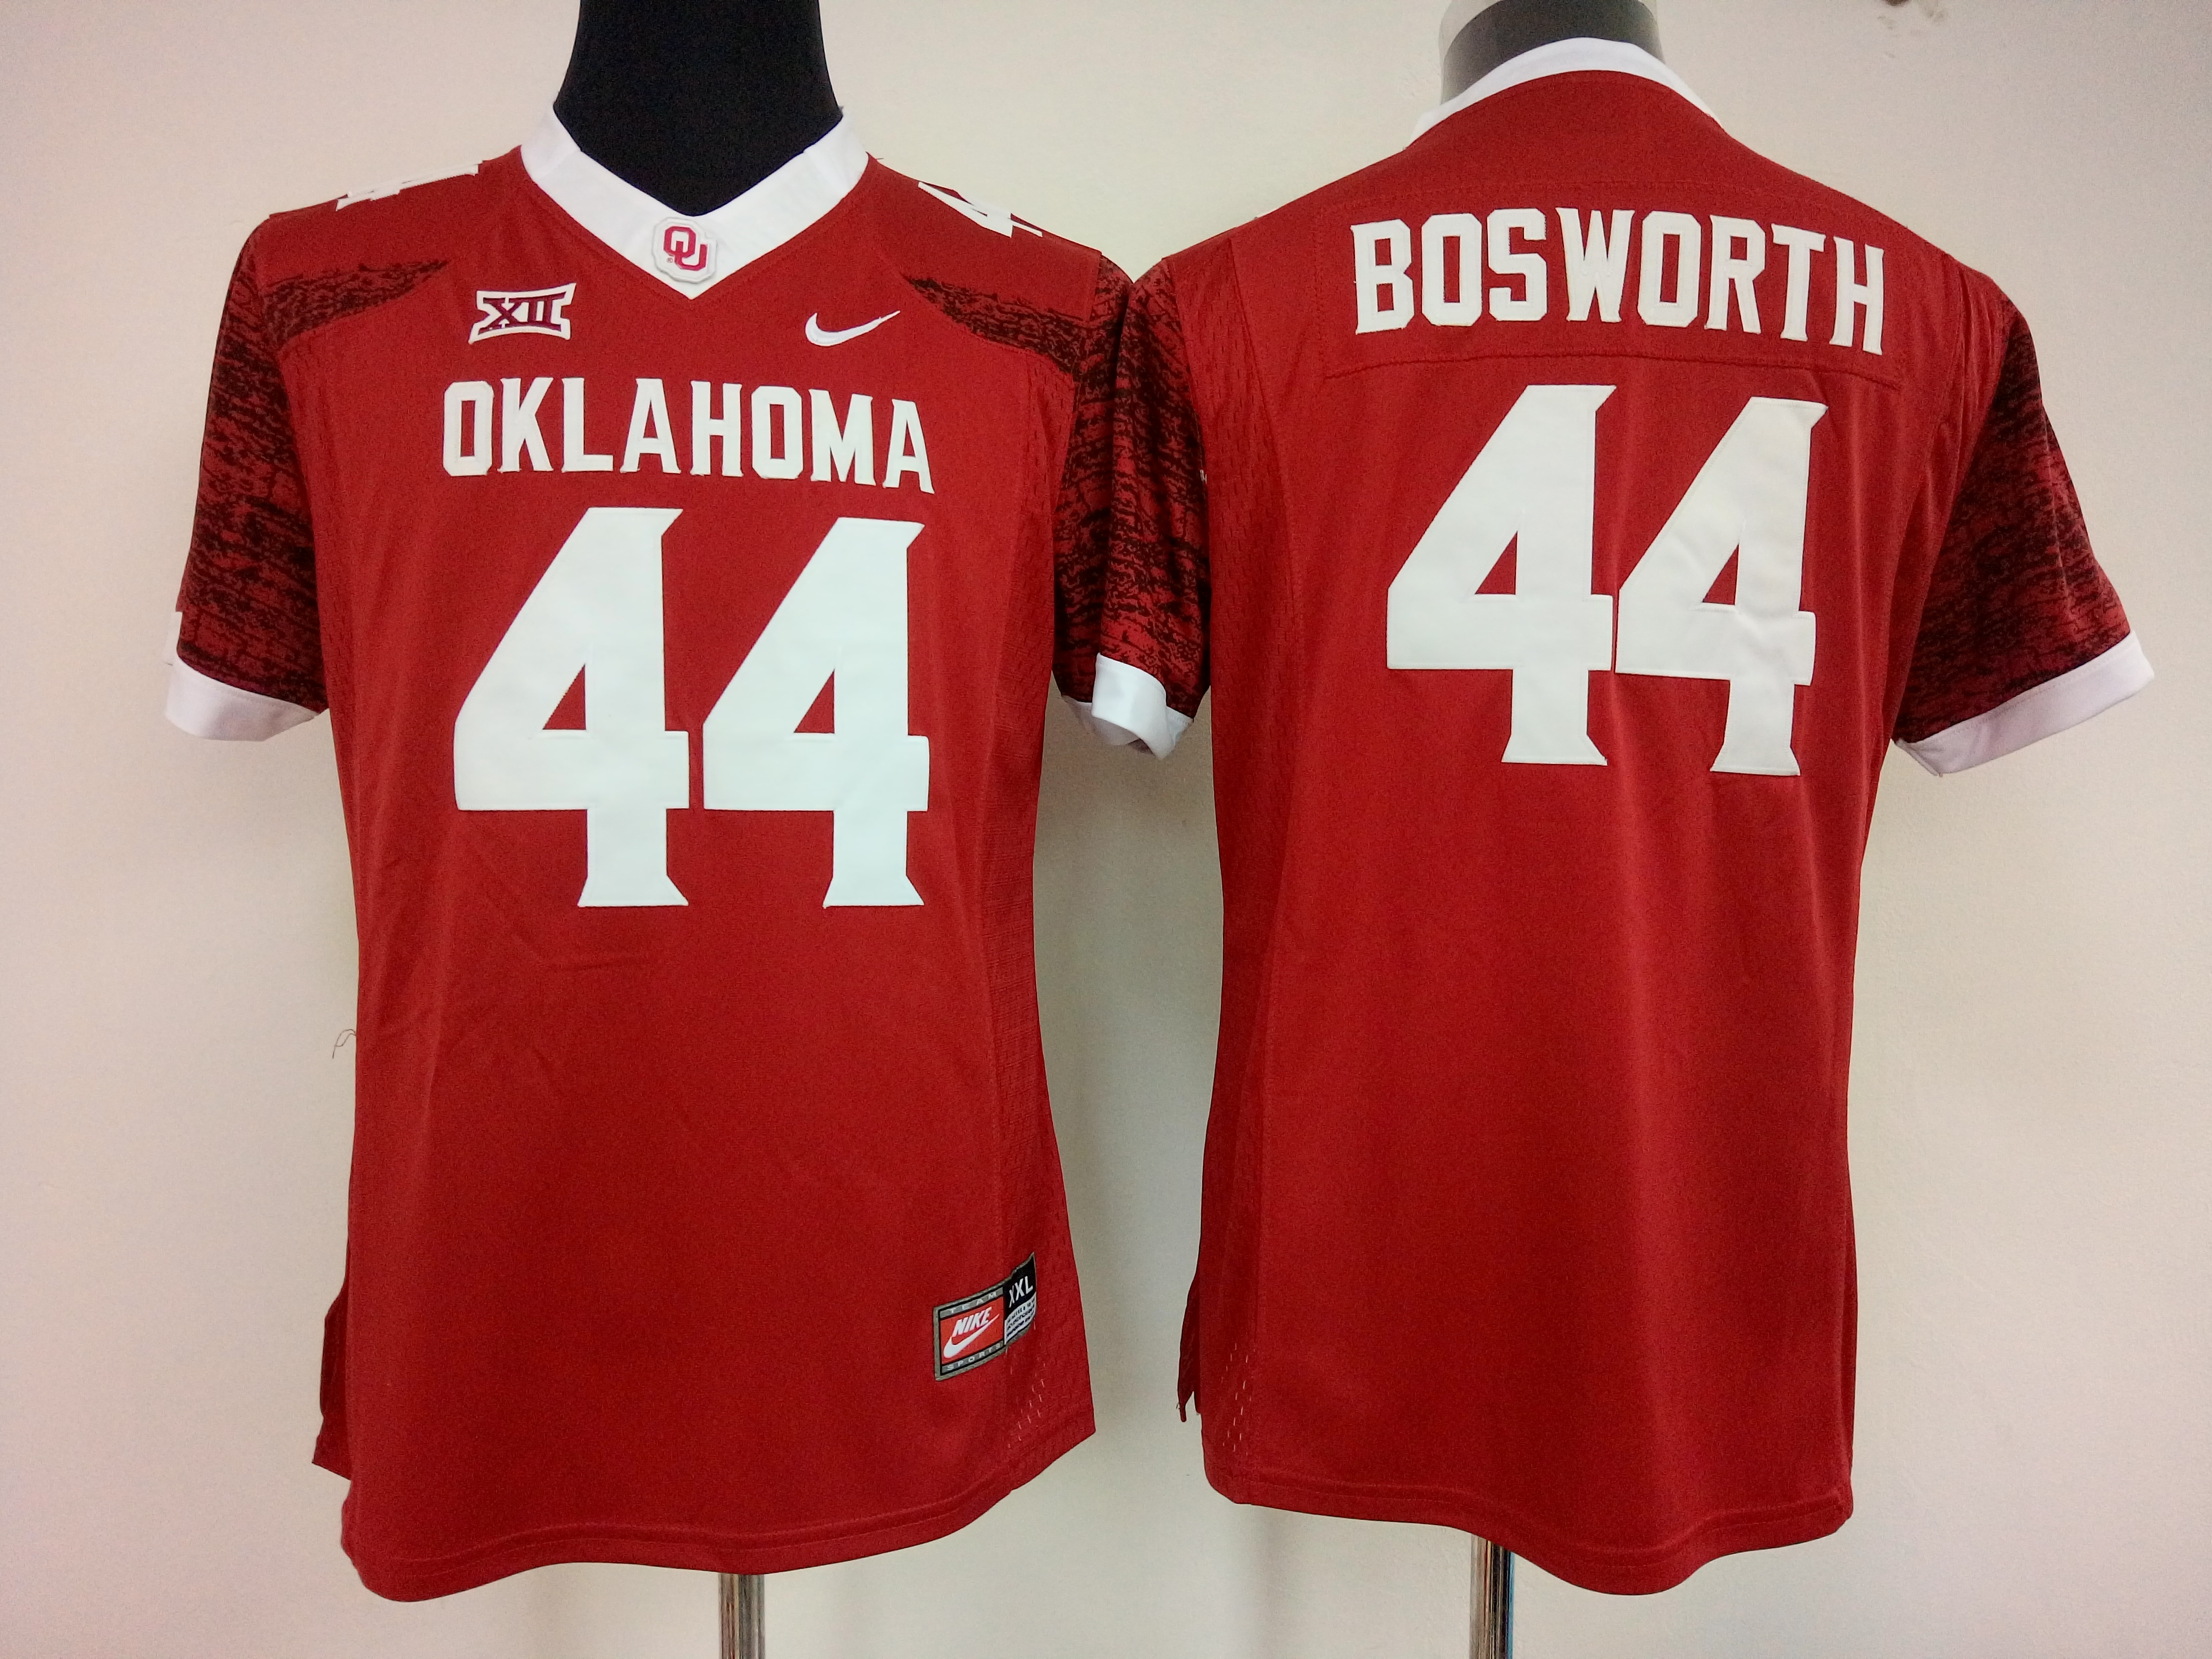 NCAA Womens Oklahoma Sooners Red 44 bosworth jerseys